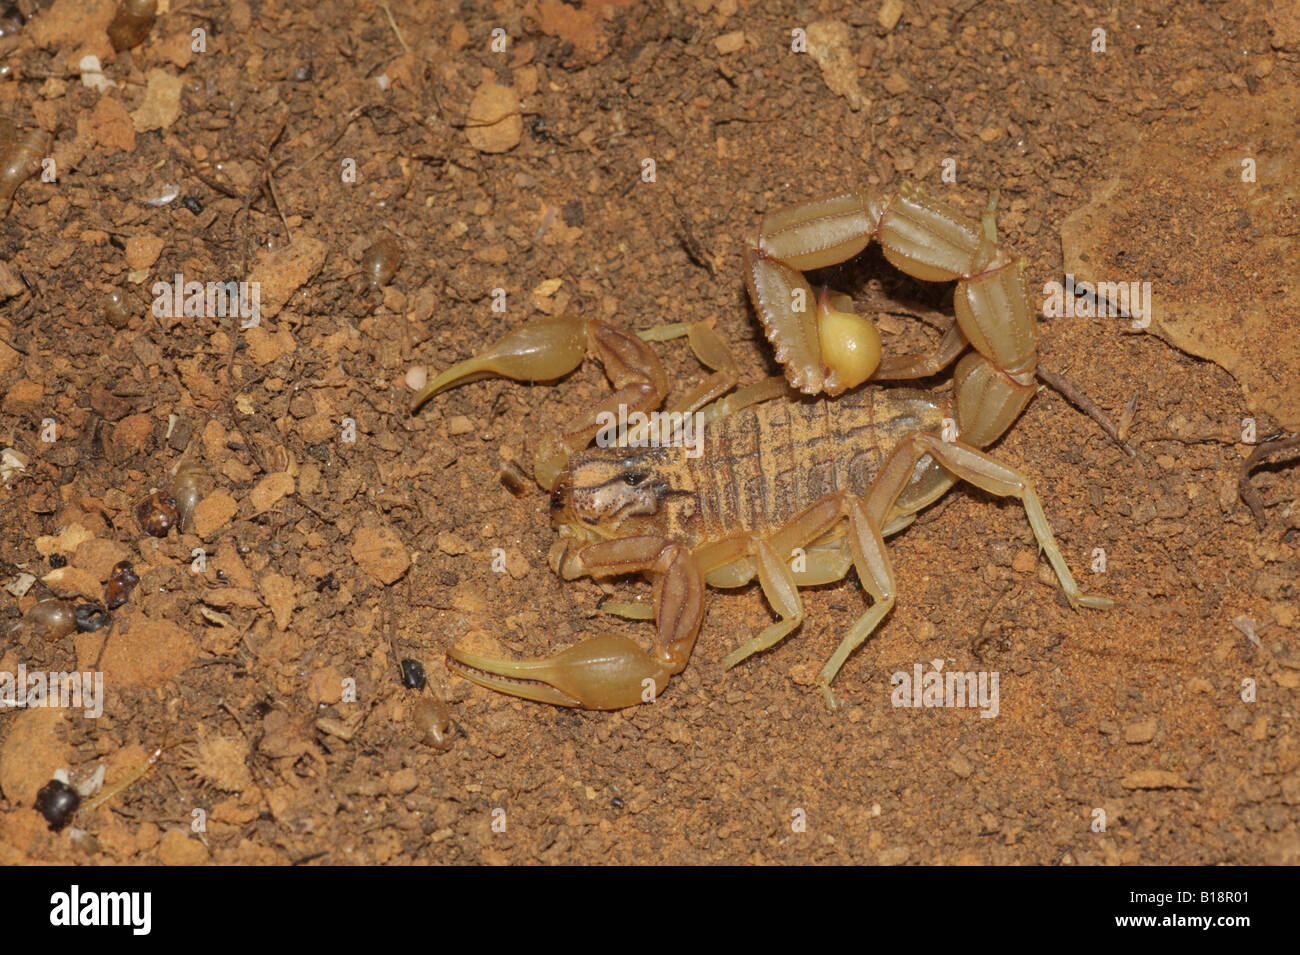 Scorpion - Buthus occitanus Stock Photo